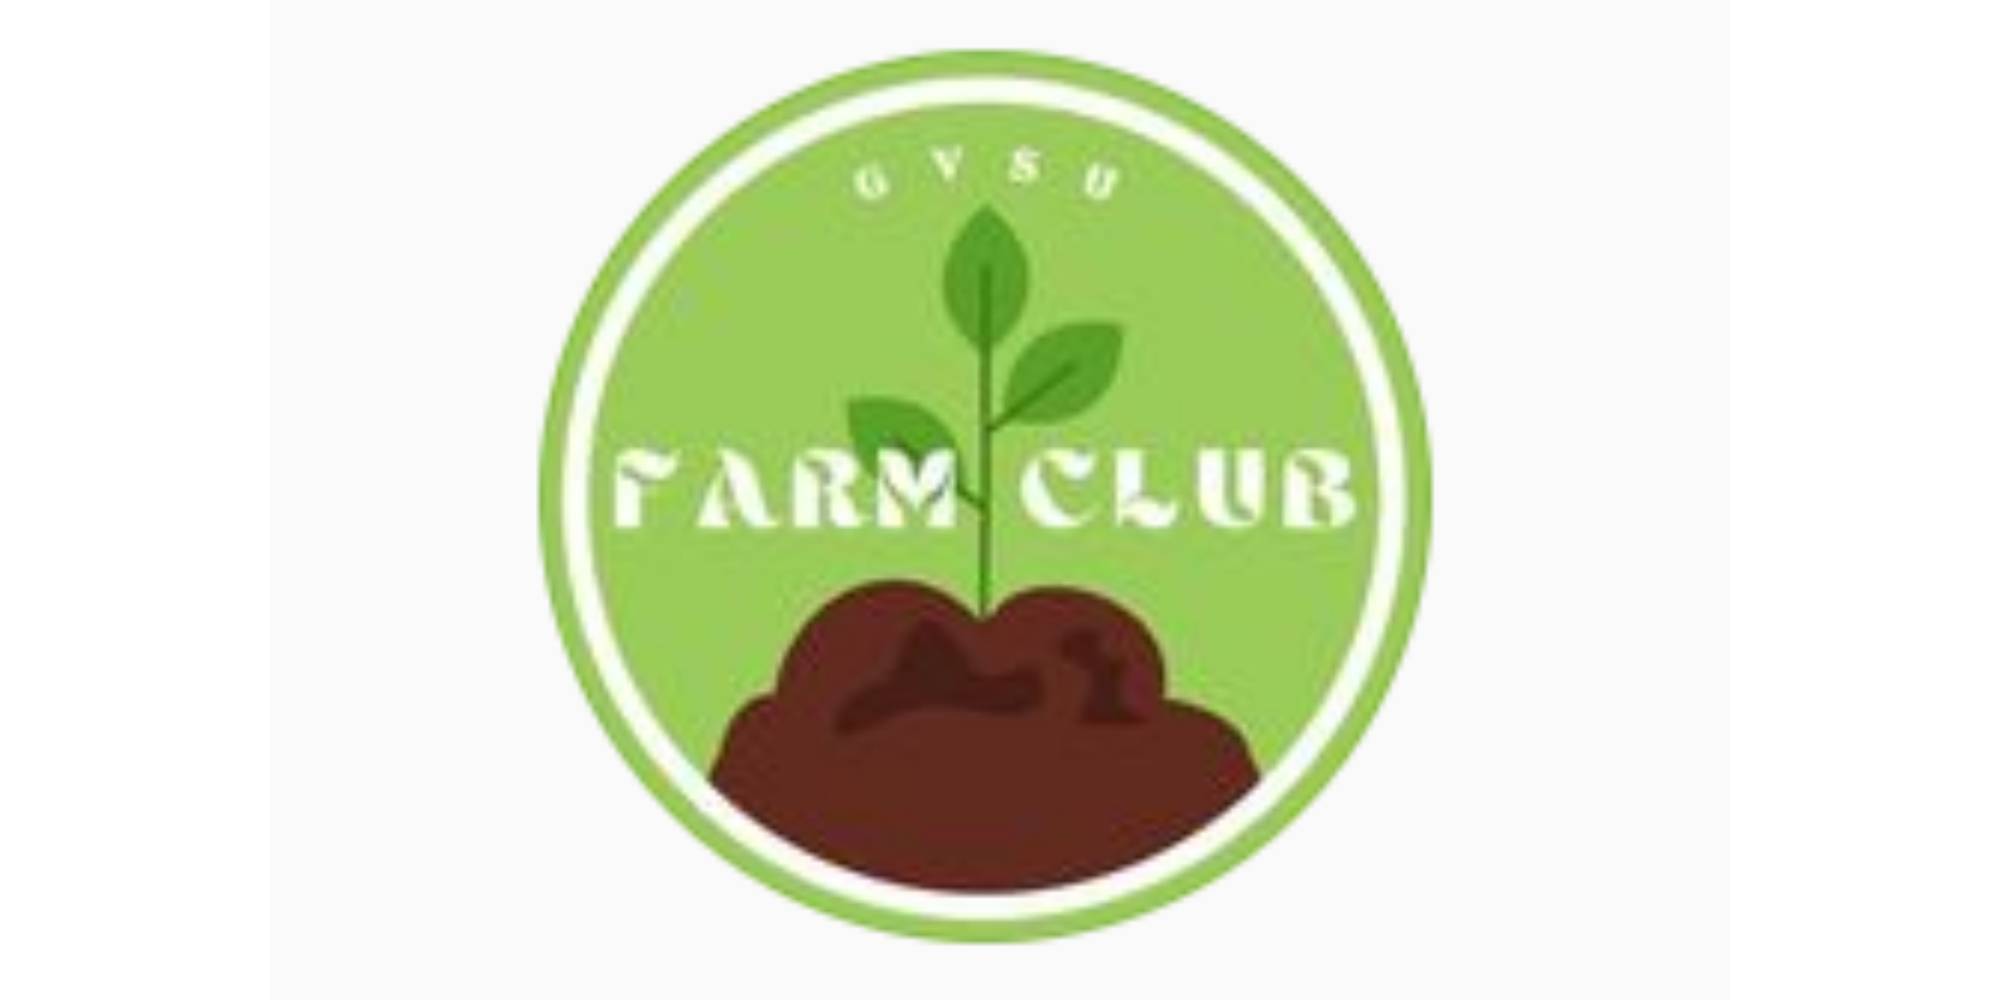 GVSU Farm Club Logo